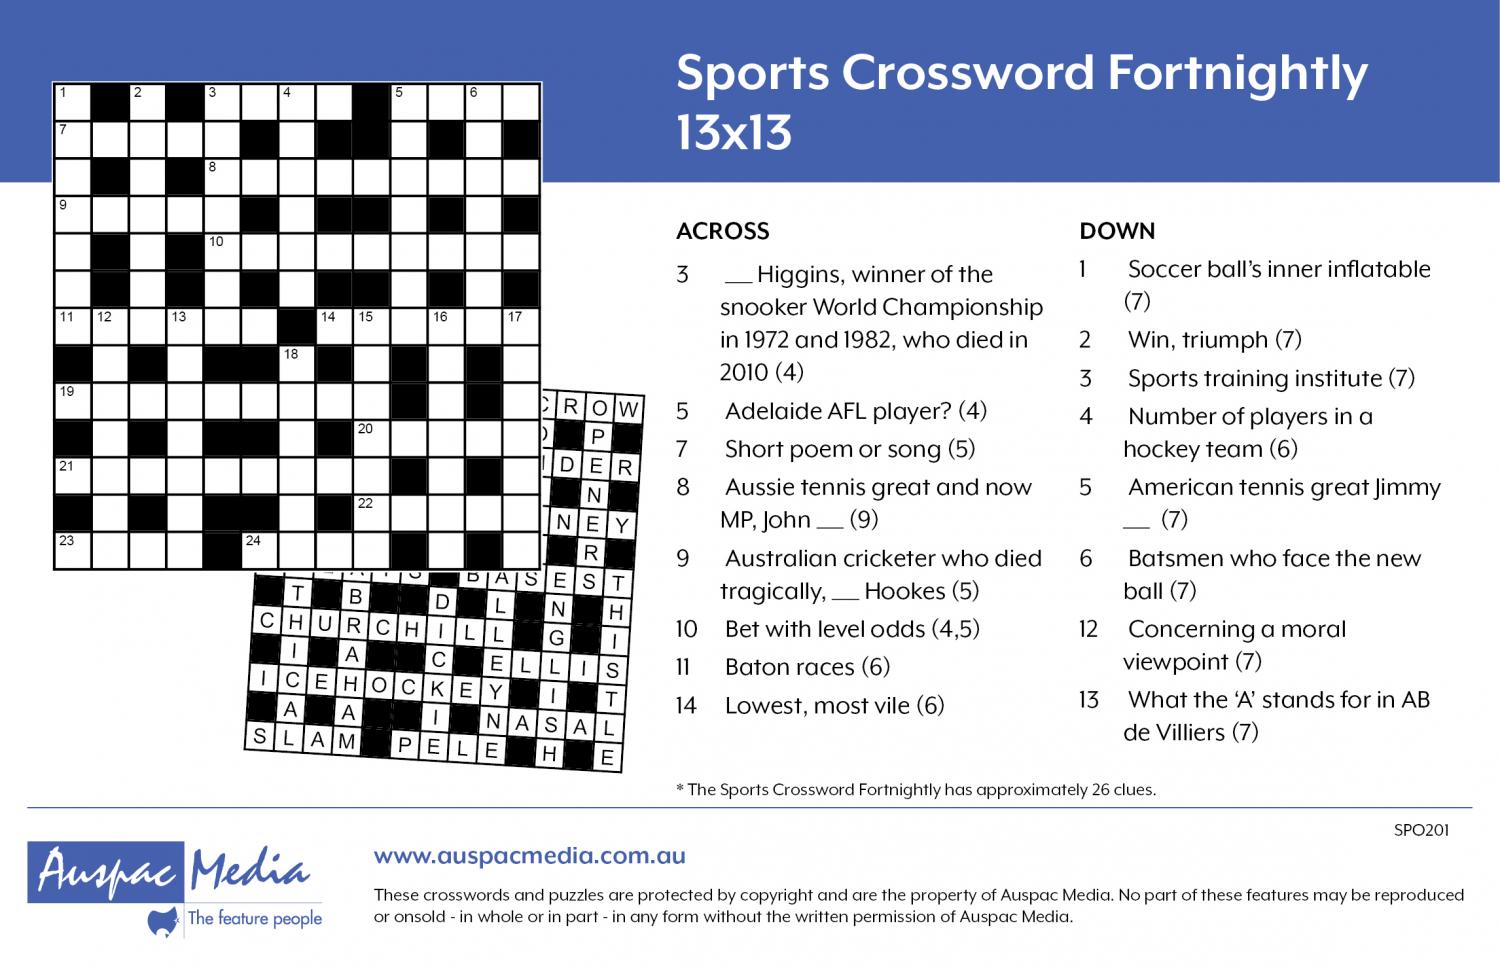 Crossword people. Кроссворд. Кроссворд на тему спорт. Кроссворд про спорт. Crossword Puzzle Sports ответы.